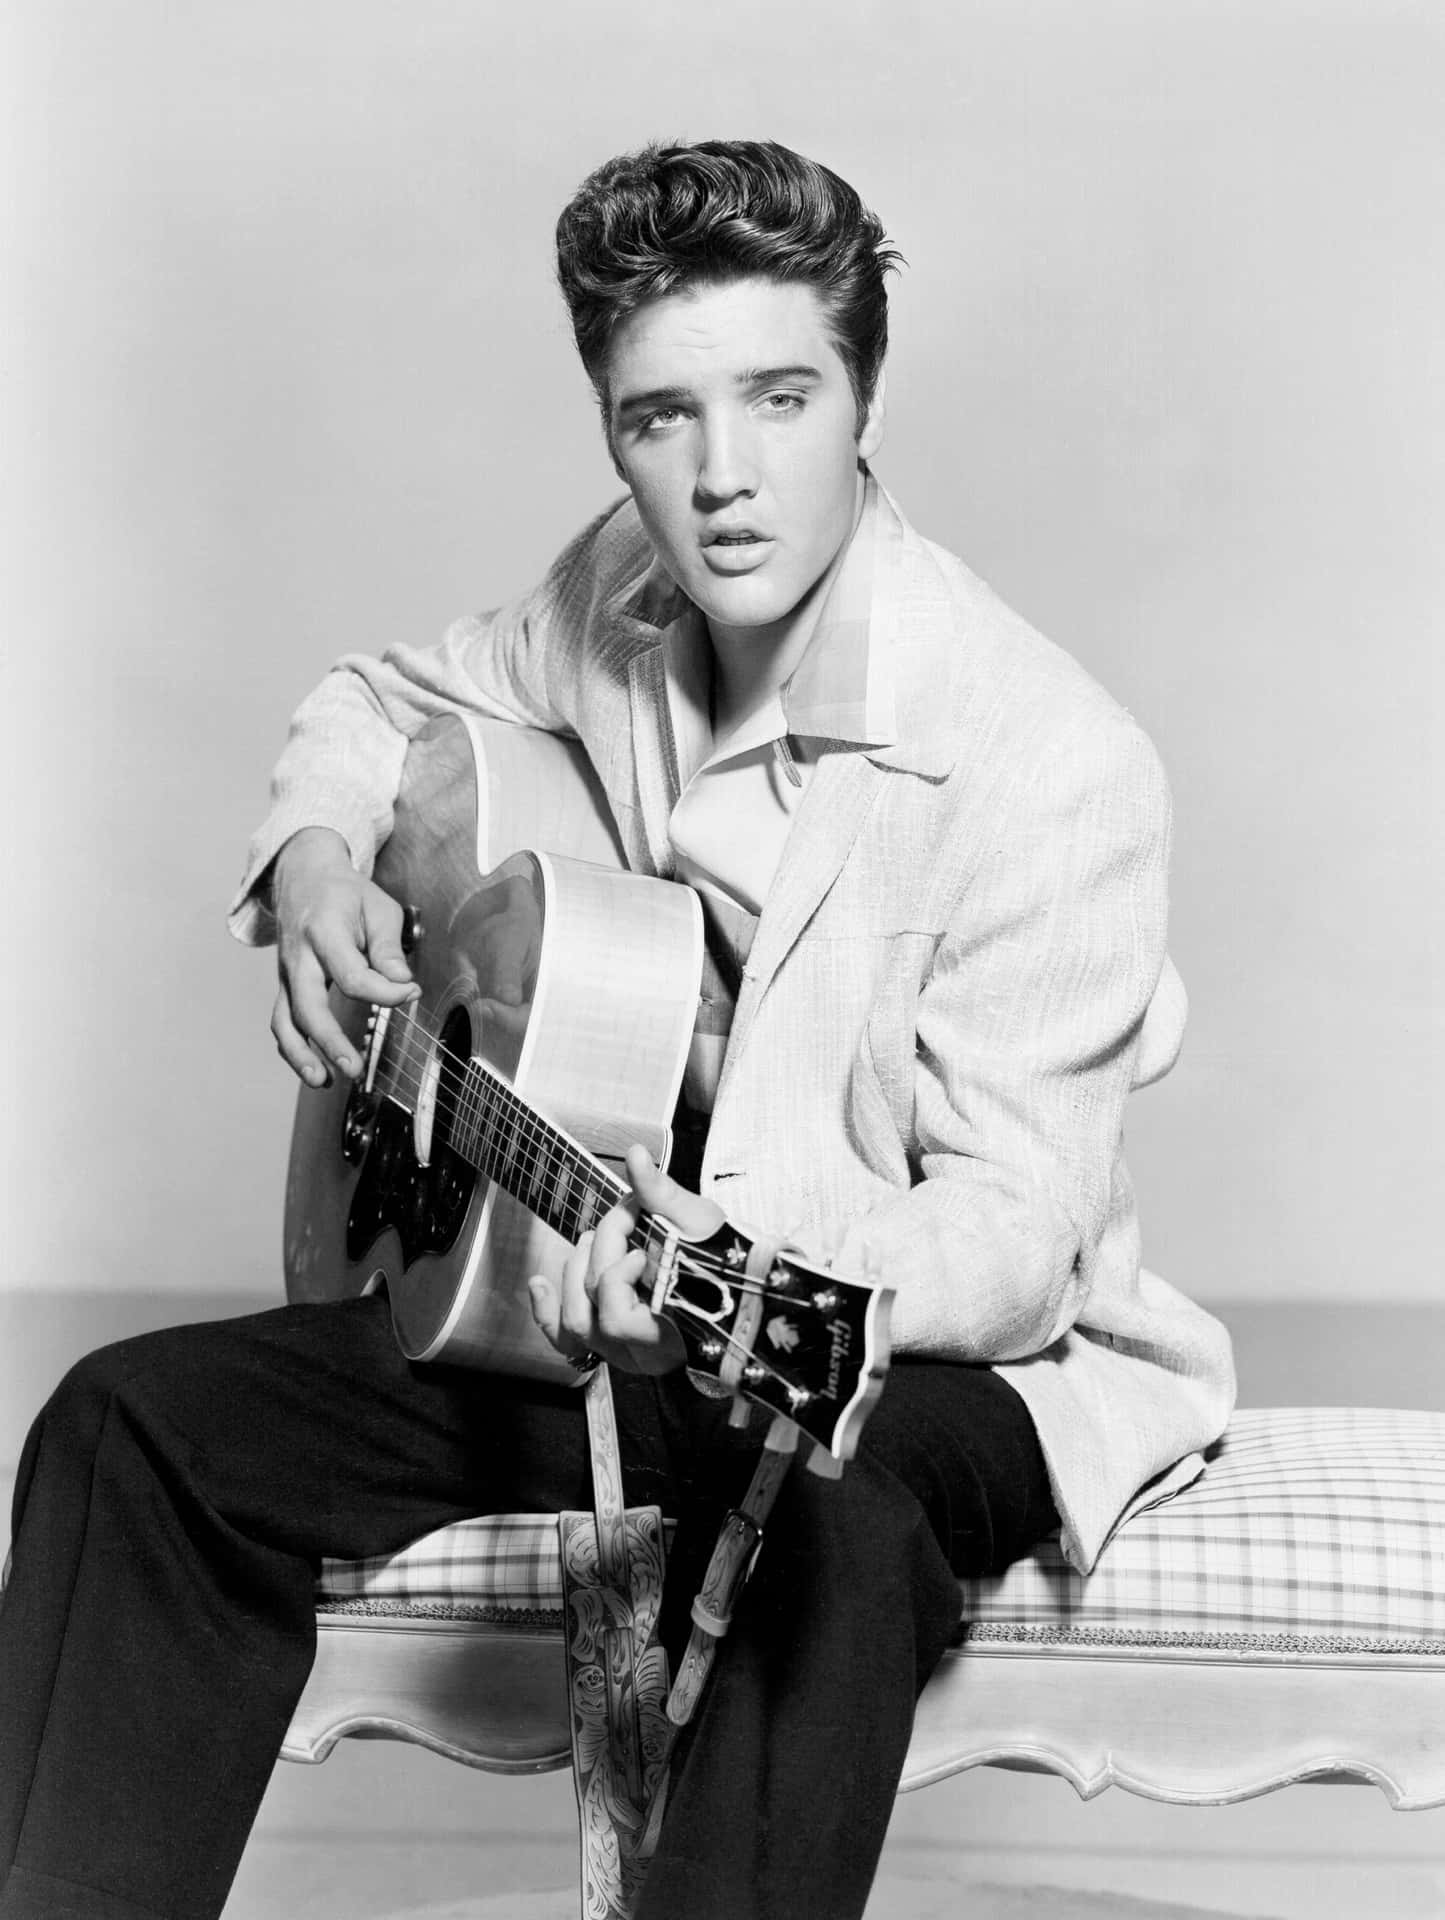 "The King of Rock n’ Roll, Elvis Presley!"